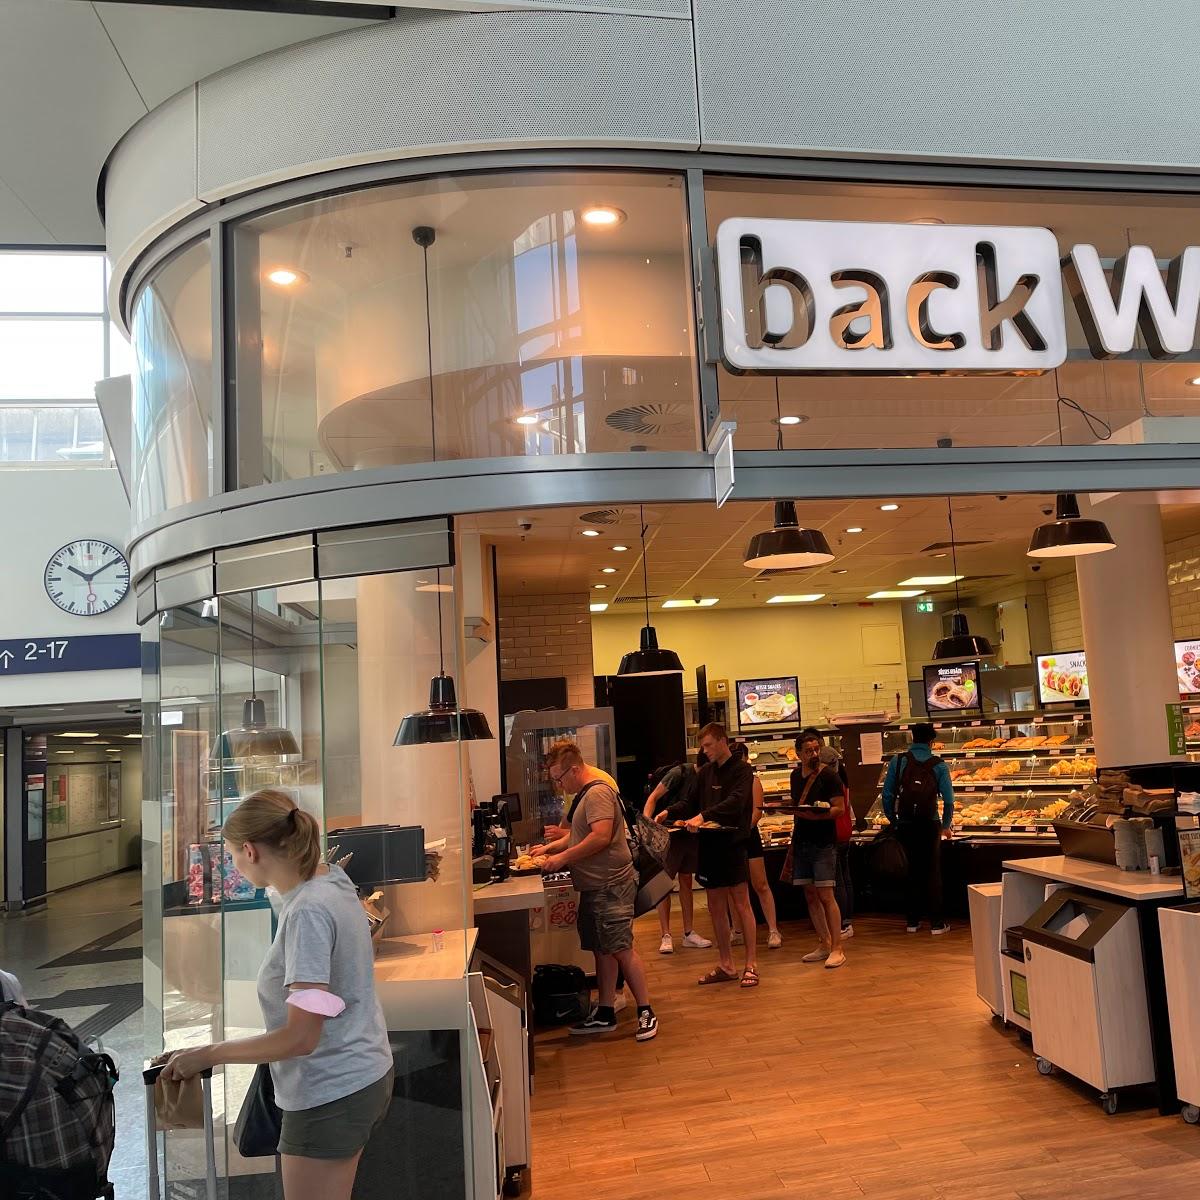 Restaurant "BackWerk" in Münster